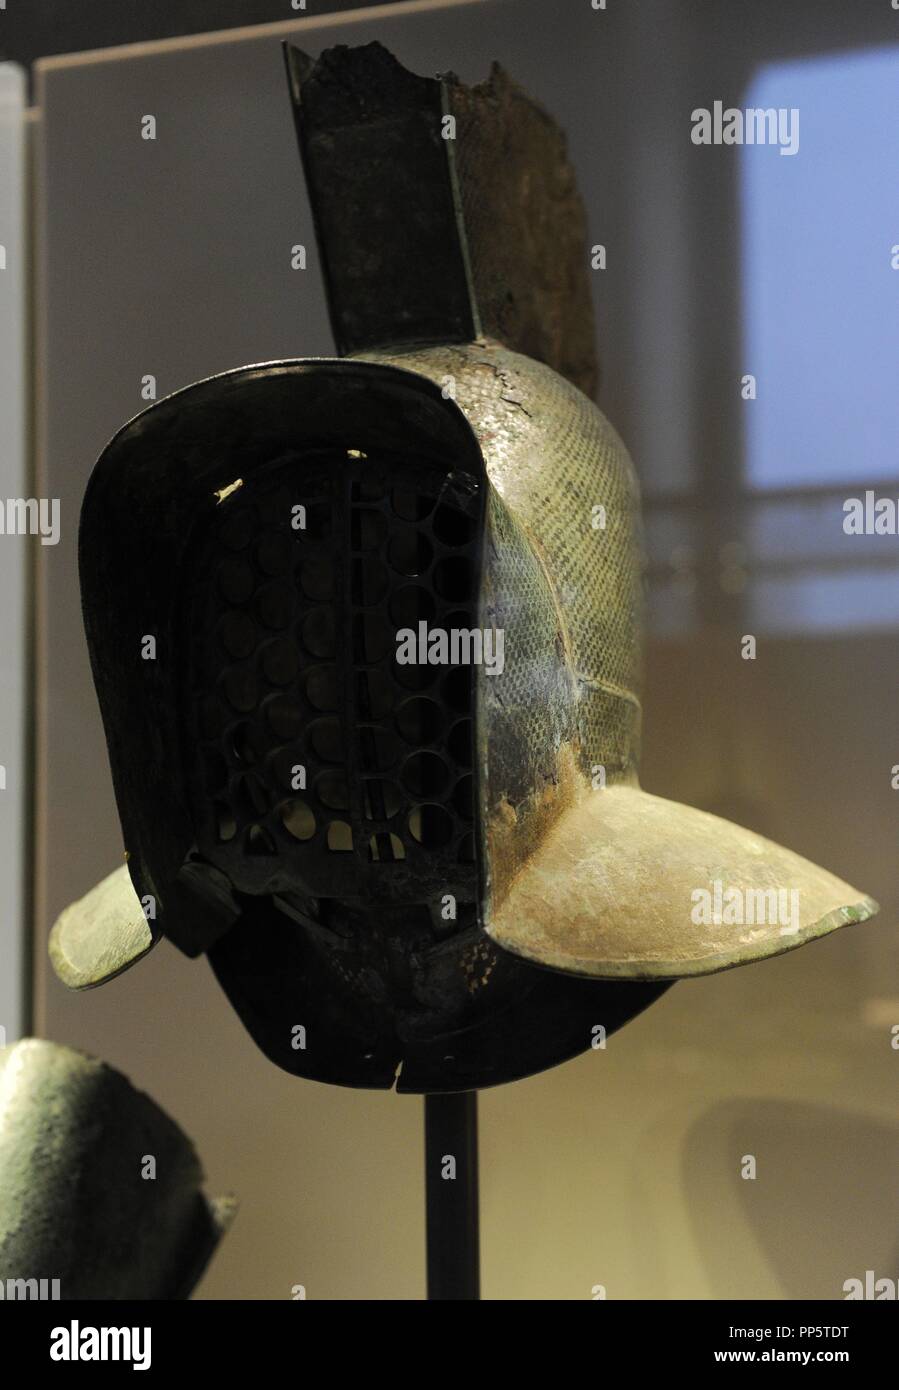 Casco di un murmillo, un tipo di gladiatore. Bronzo e stagno. Ii secolo D.C. Neues Museum (Museo Nuovo). Berlino. Germania. Foto Stock